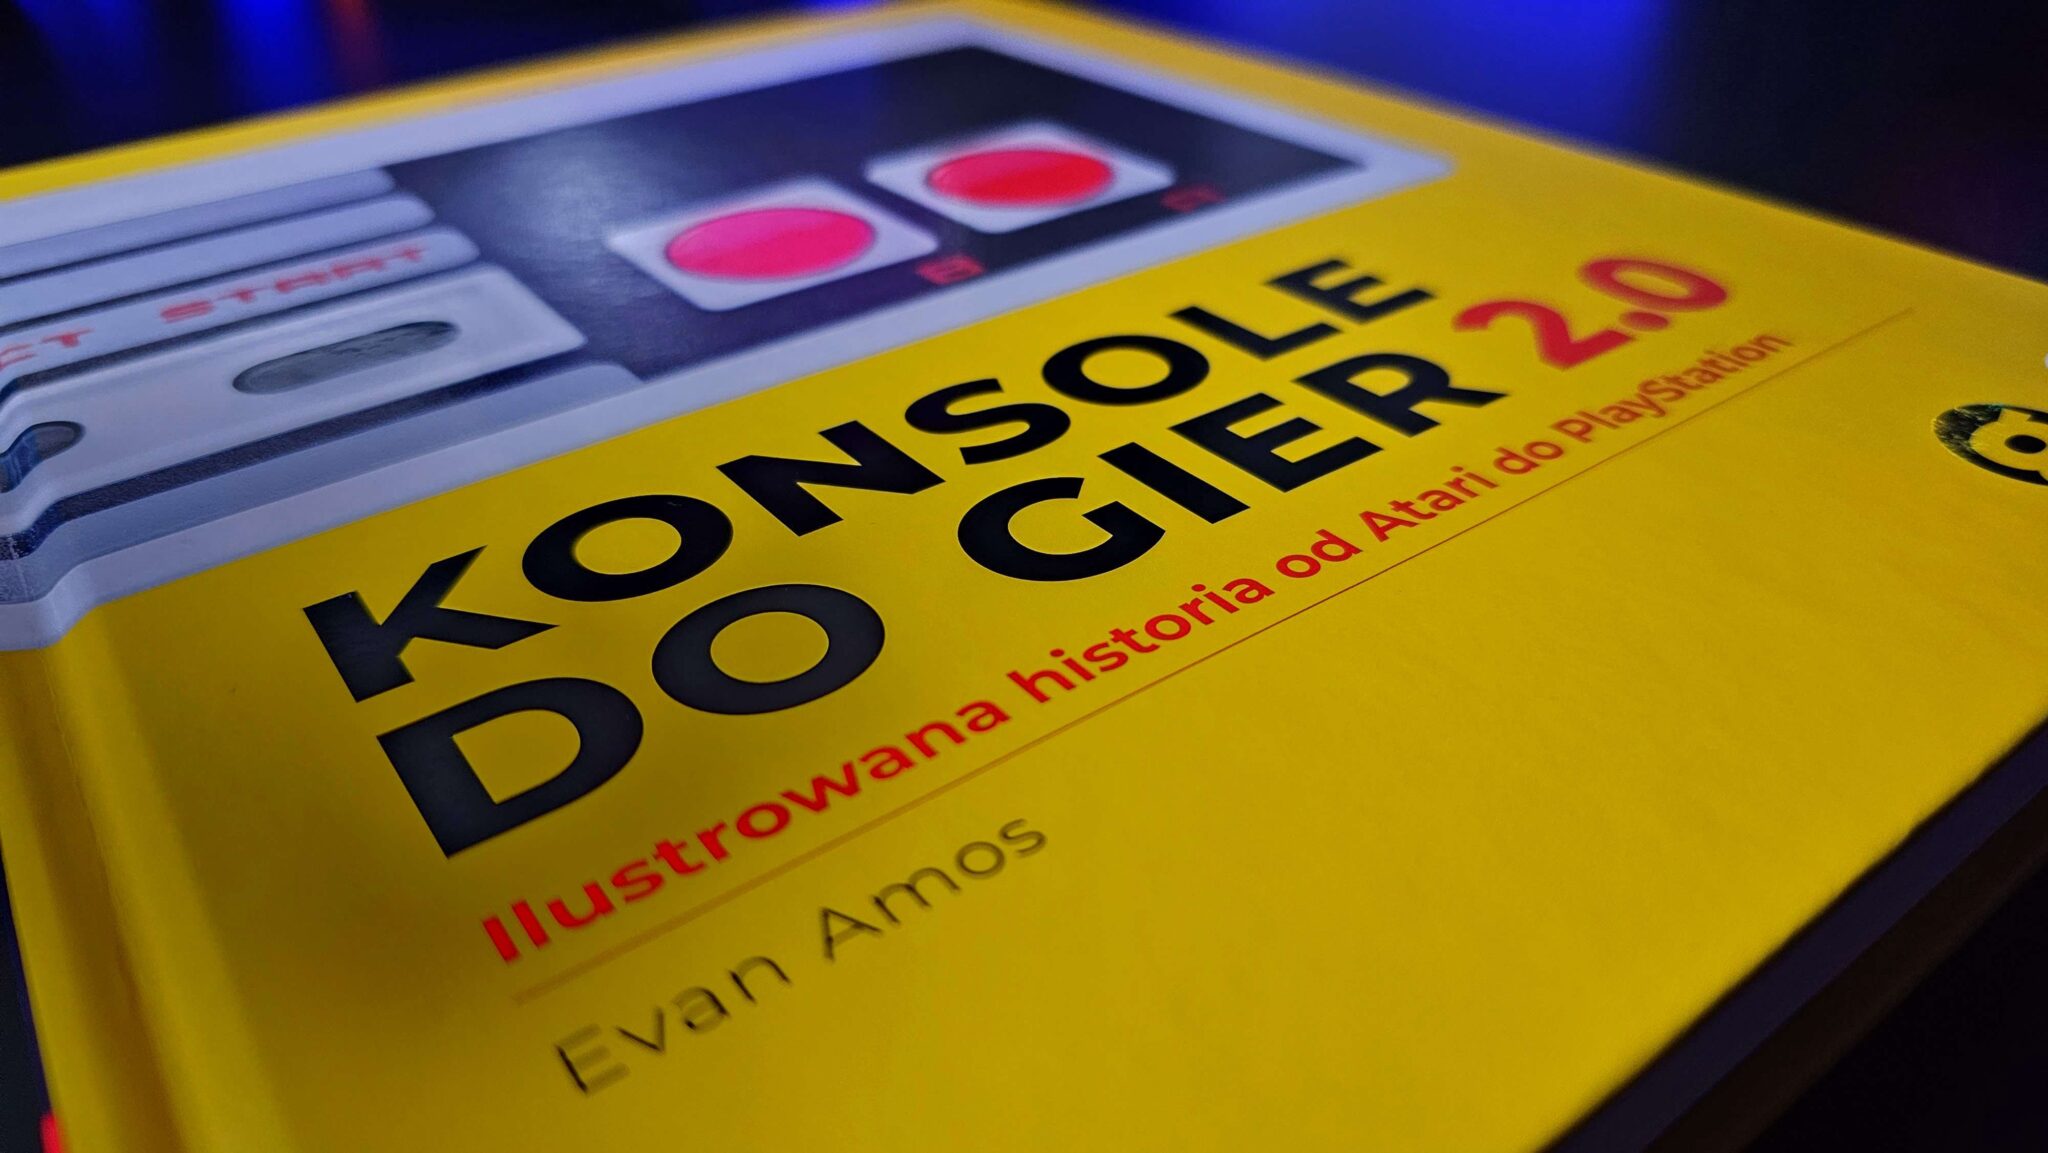 Recenzja książki Konsole do gier 2.0